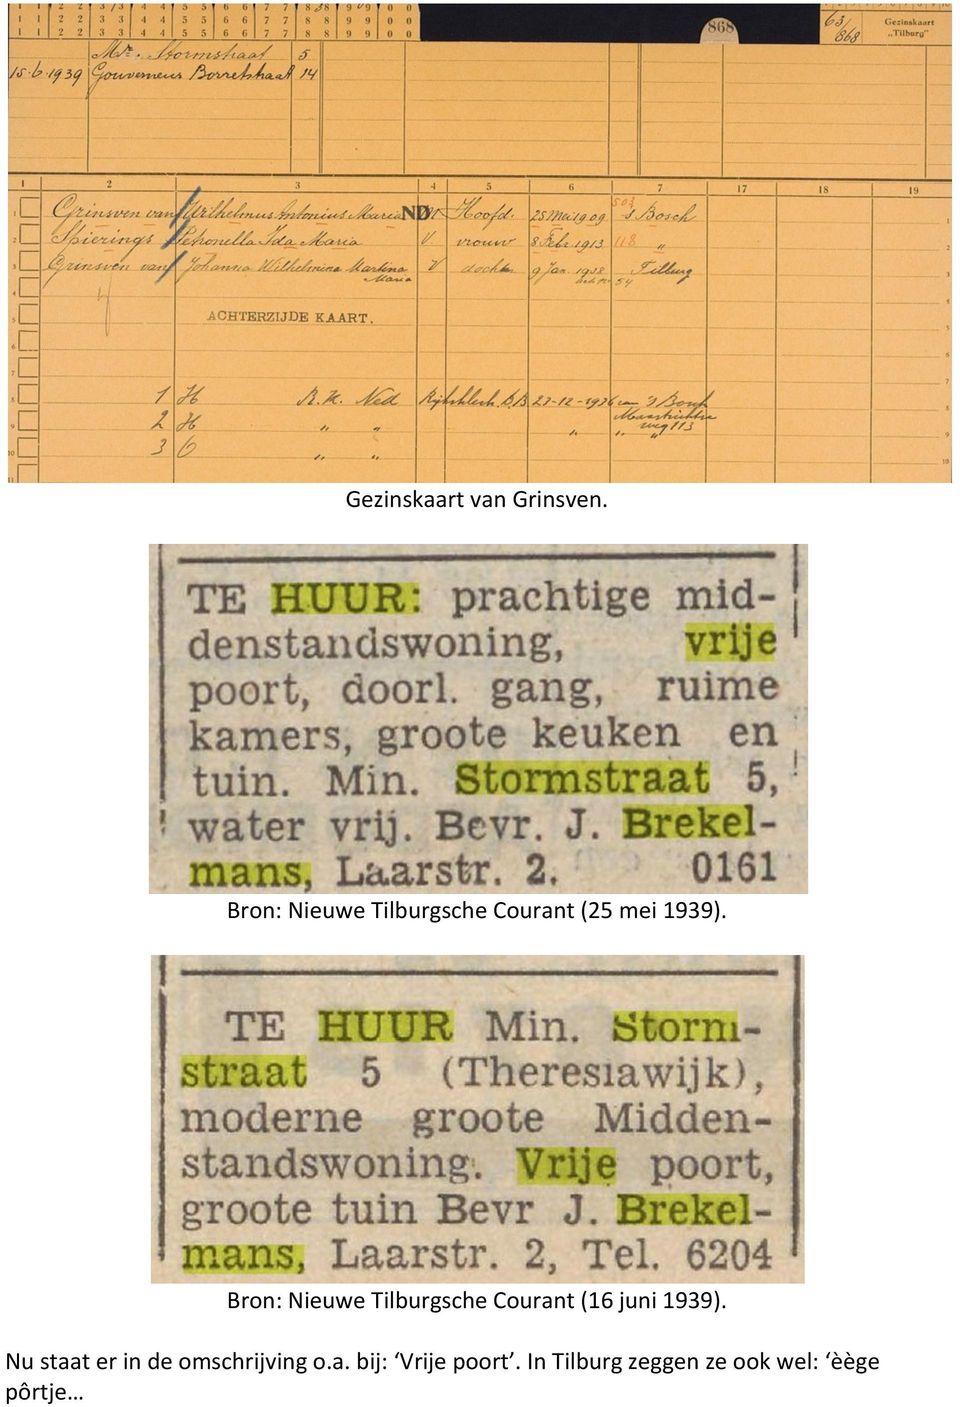 Bron: Nieuwe Tilburgsche Courant (16 juni 1939).